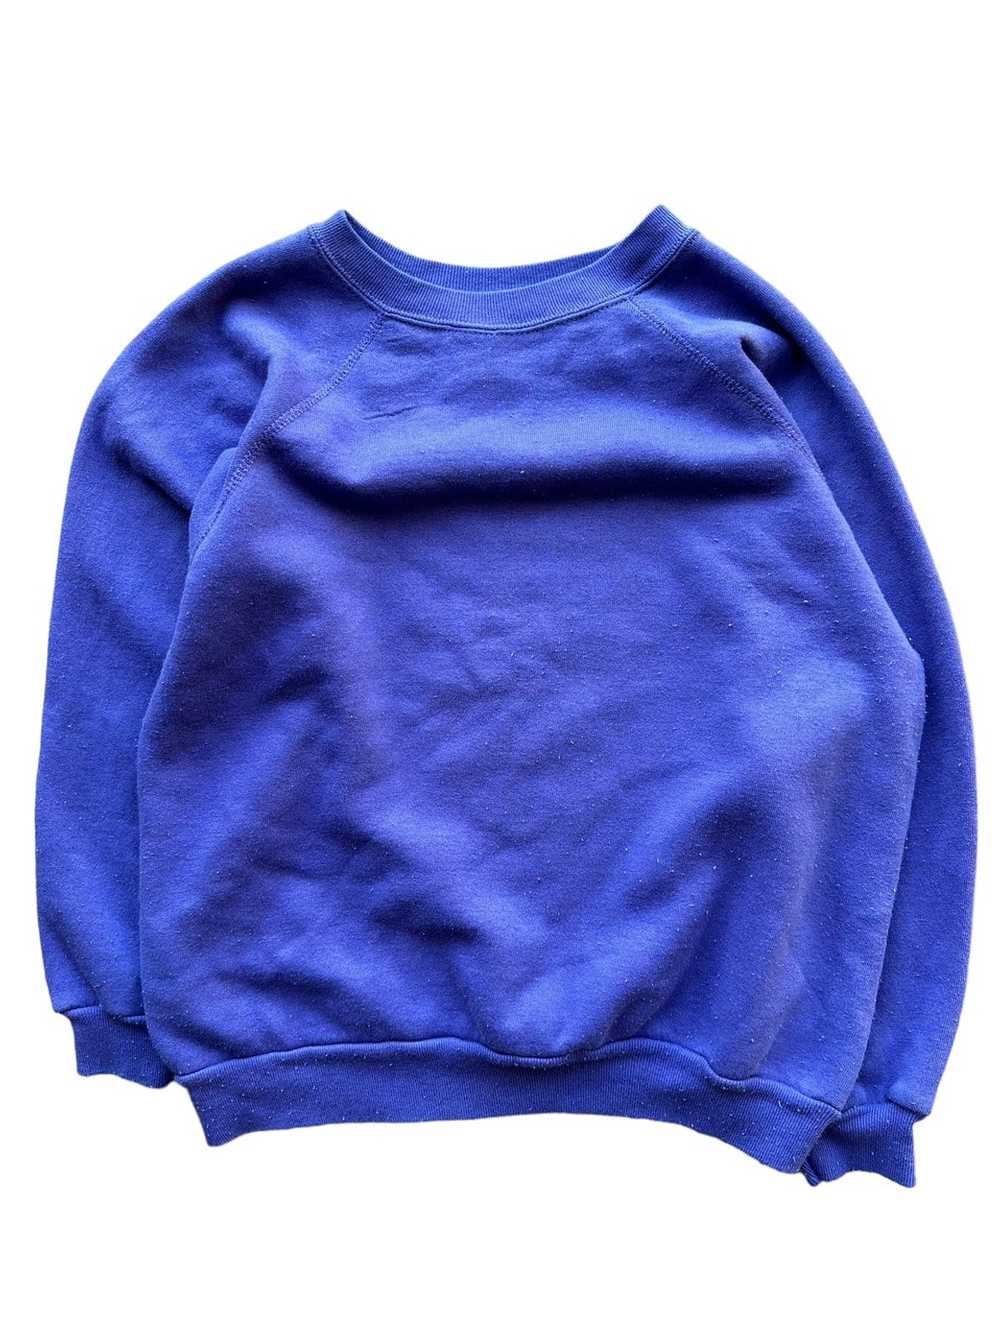 Vintage Vintage 90’s California Sweatshirt - image 2